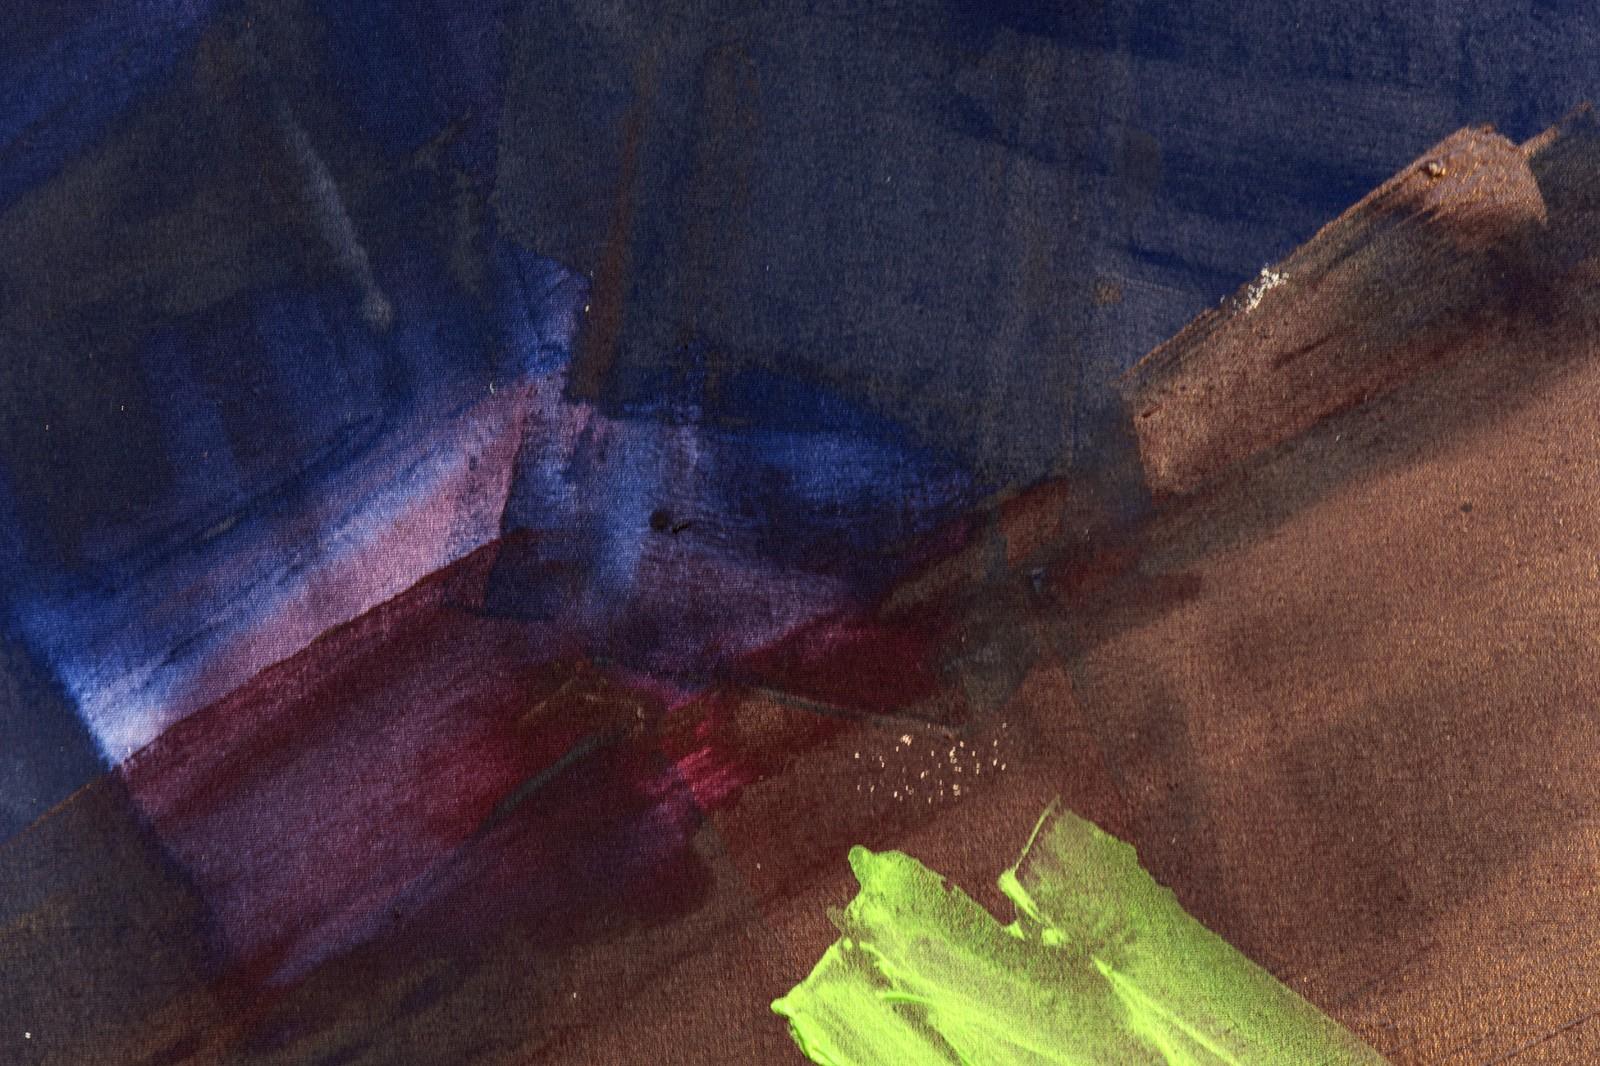 Kopfkopf Spin - Dunkle Farbtöne mit Akzenten in Hellblau, Grün, Türkis und Rosa (Schwarz), Abstract Painting, von Milly Ristvedt